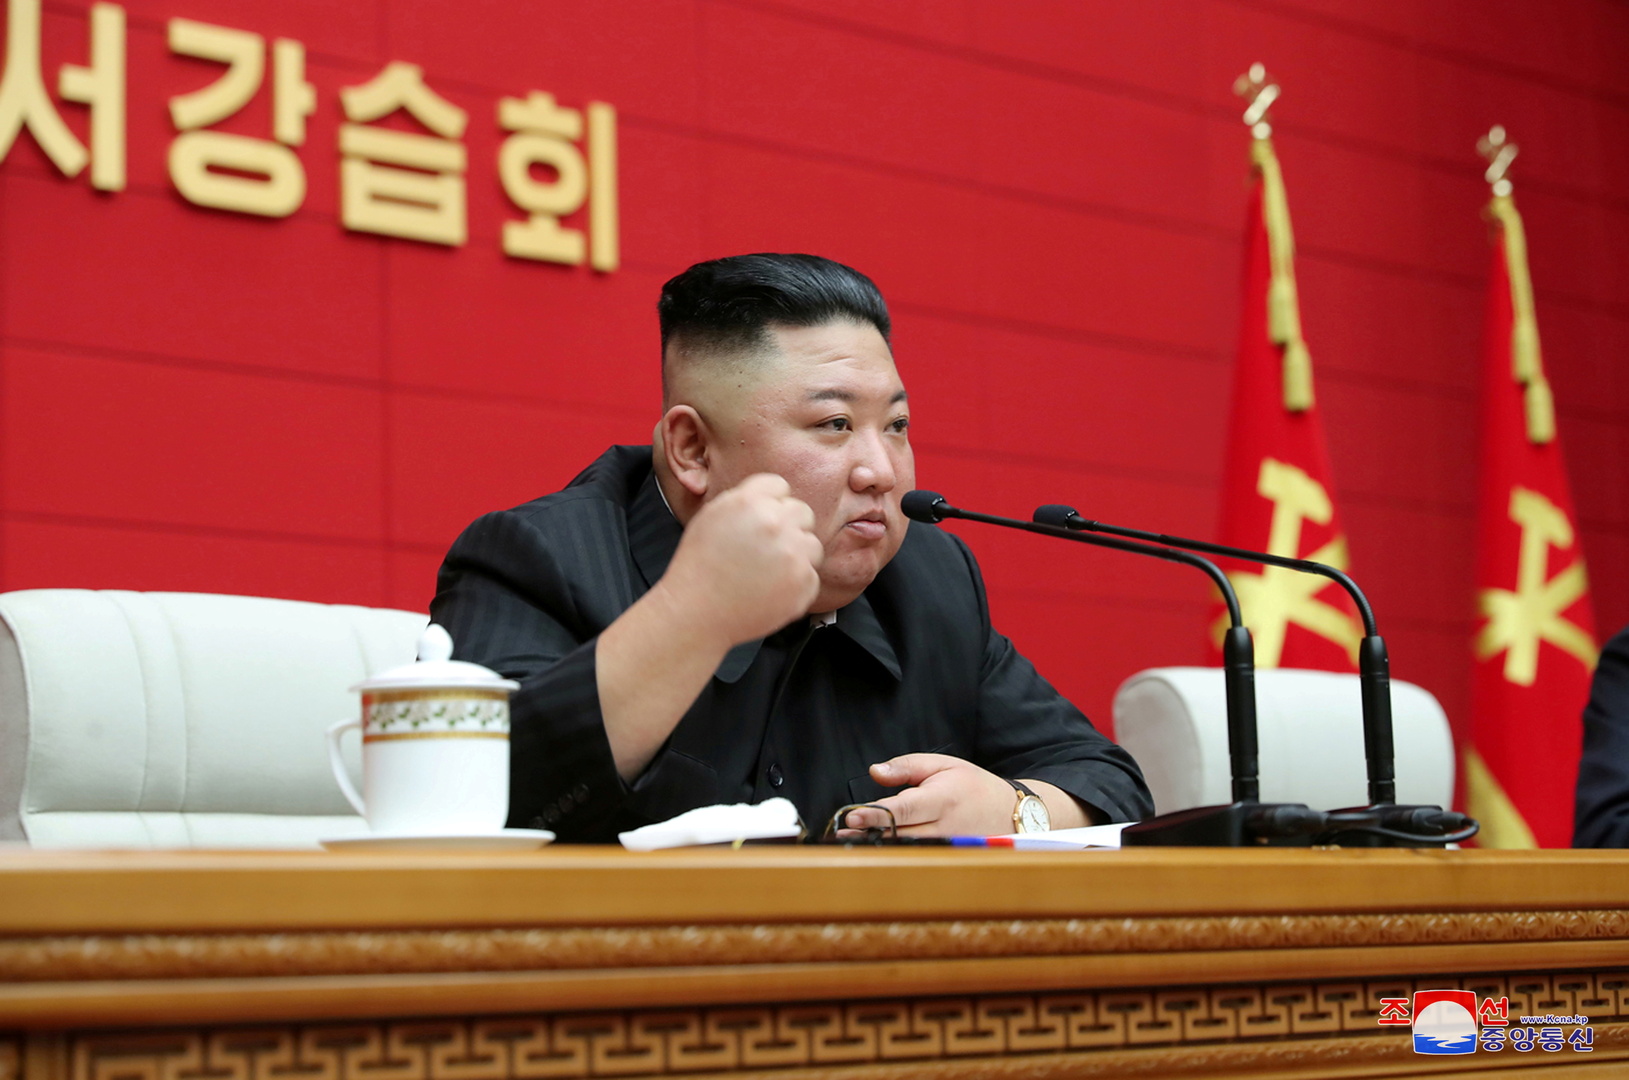 كوريا الجنوبية ترصد غياب كيم جونغ أون عن الظهور  24 يوما